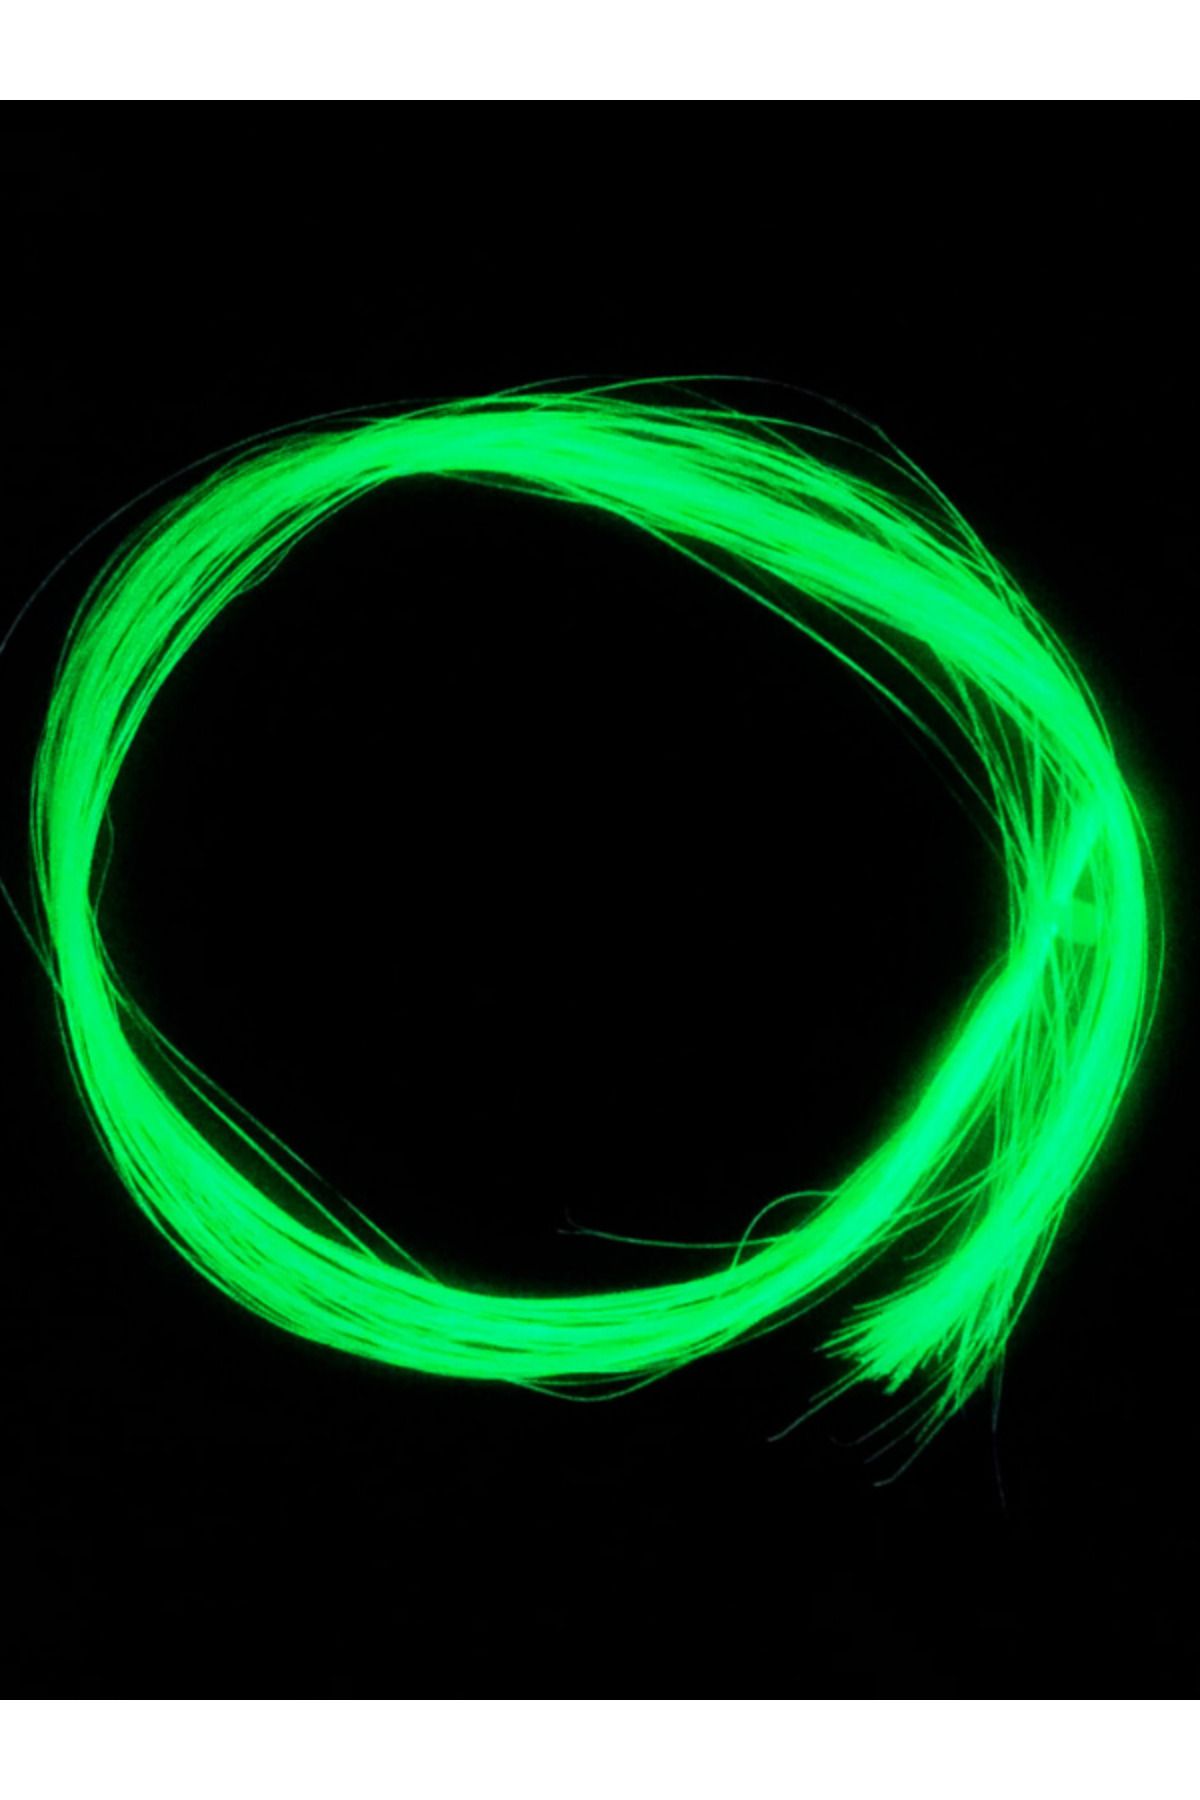 eagenset Çapari Simi Fosforlu Karanlıkta Parlayan Sarı Glow Luminous in Dark Ultraviyole UV Neon 1 Poşet